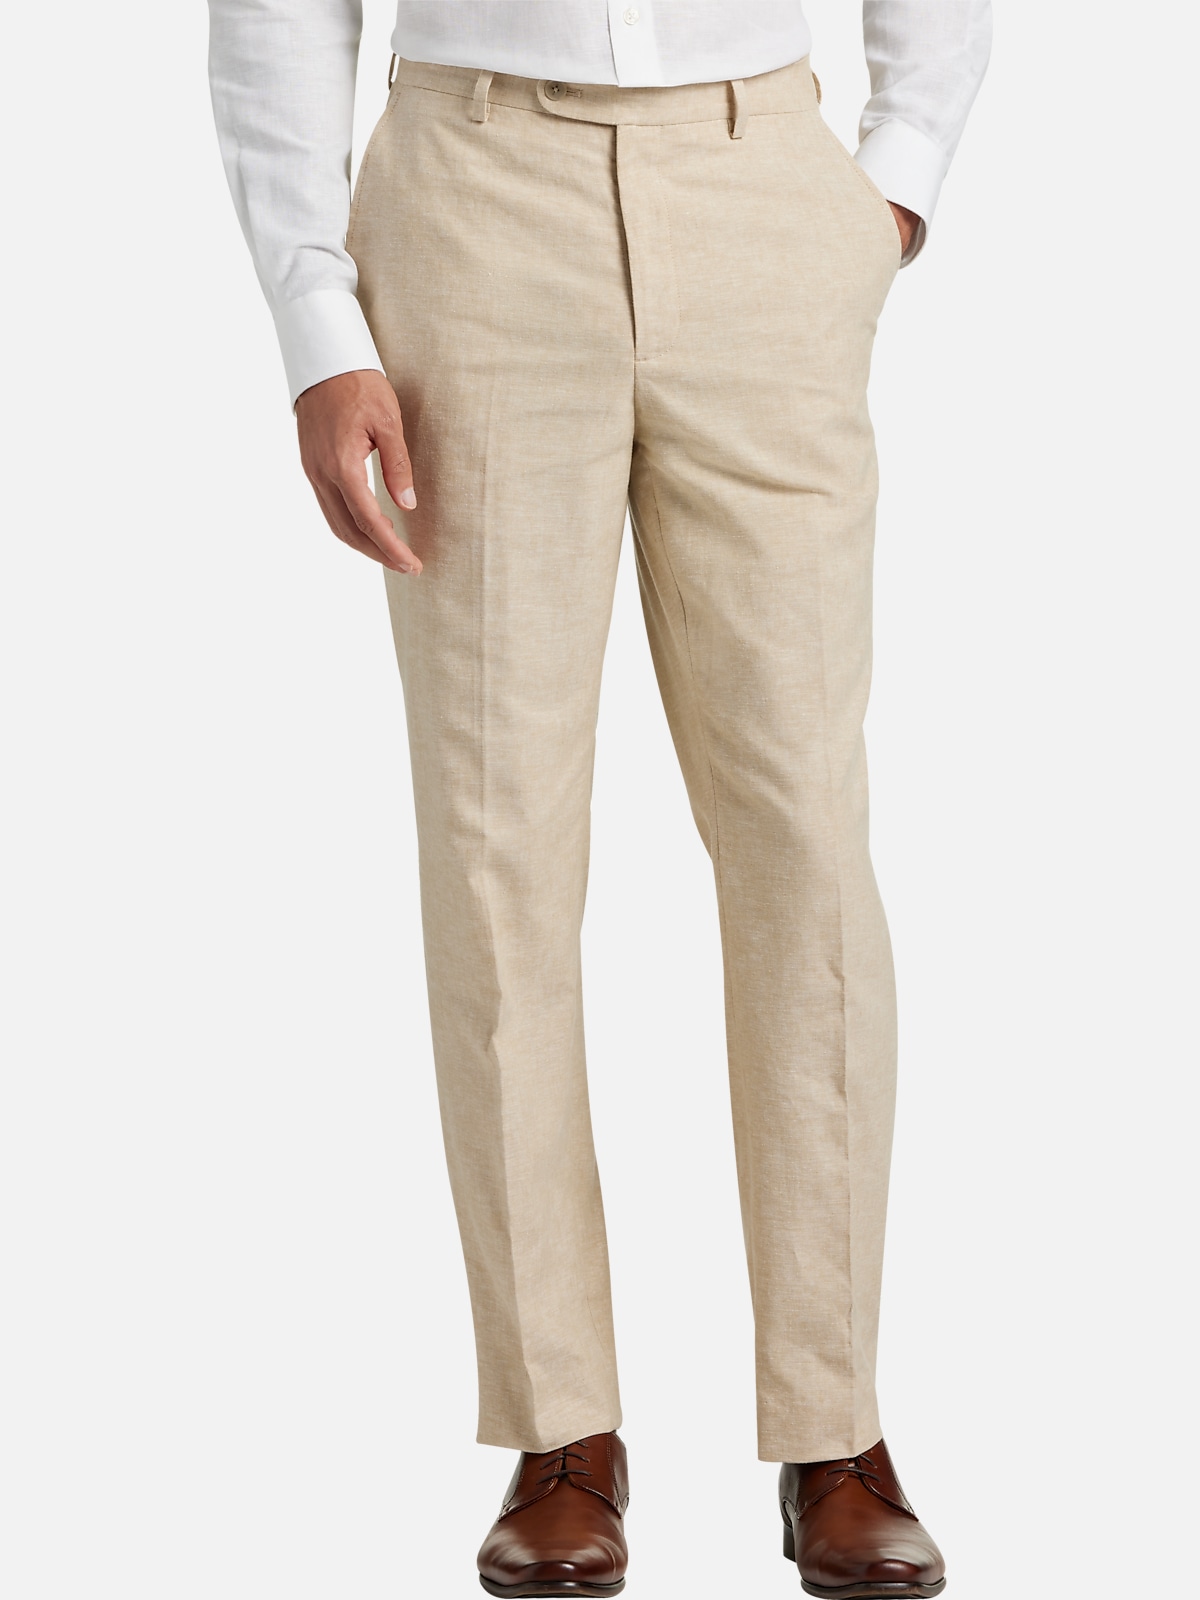 Joe Joseph Abboud Slim Fit Suit Separates Linen Pants, Men's